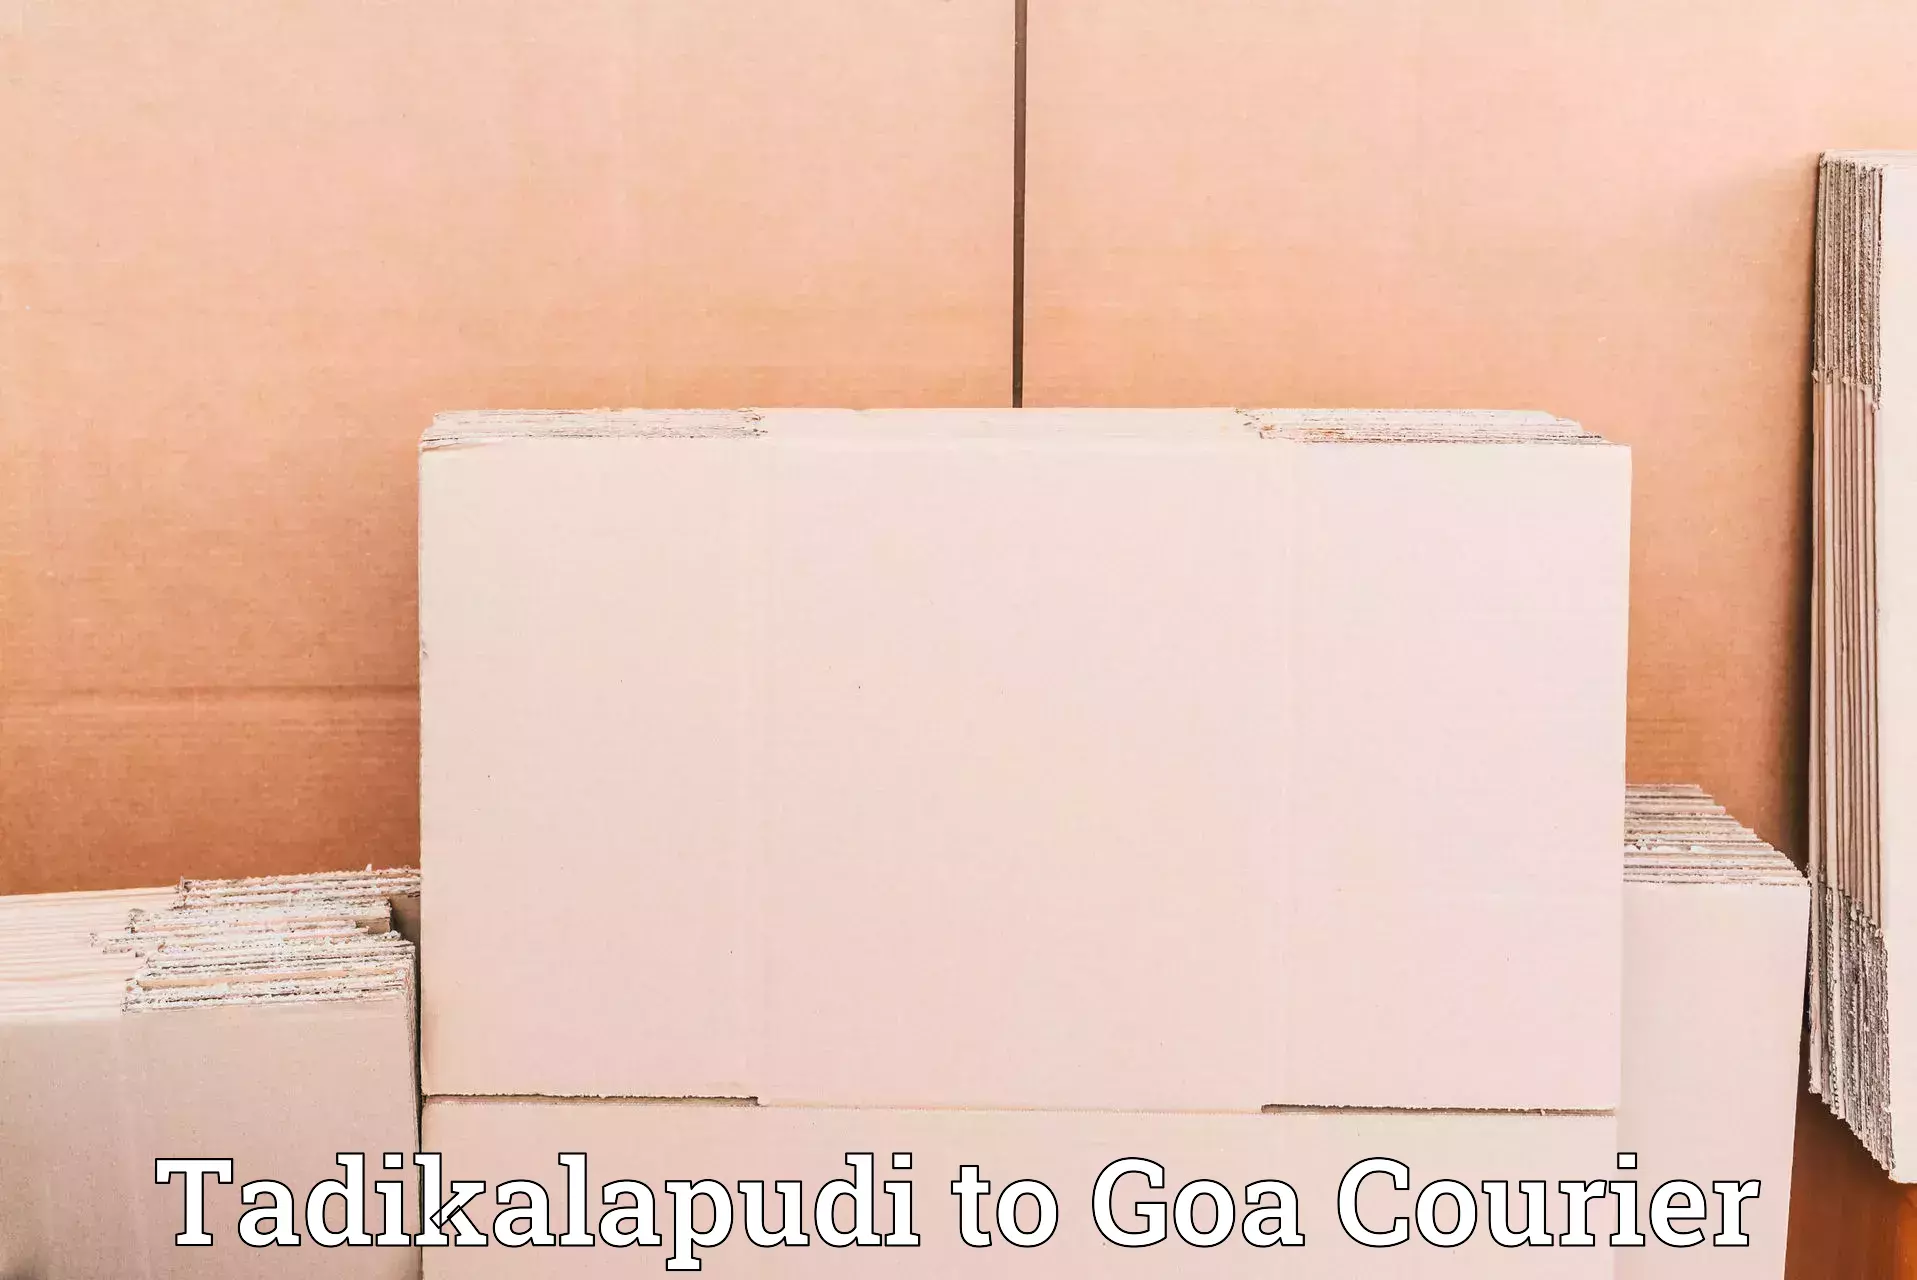 Global courier networks Tadikalapudi to Goa University